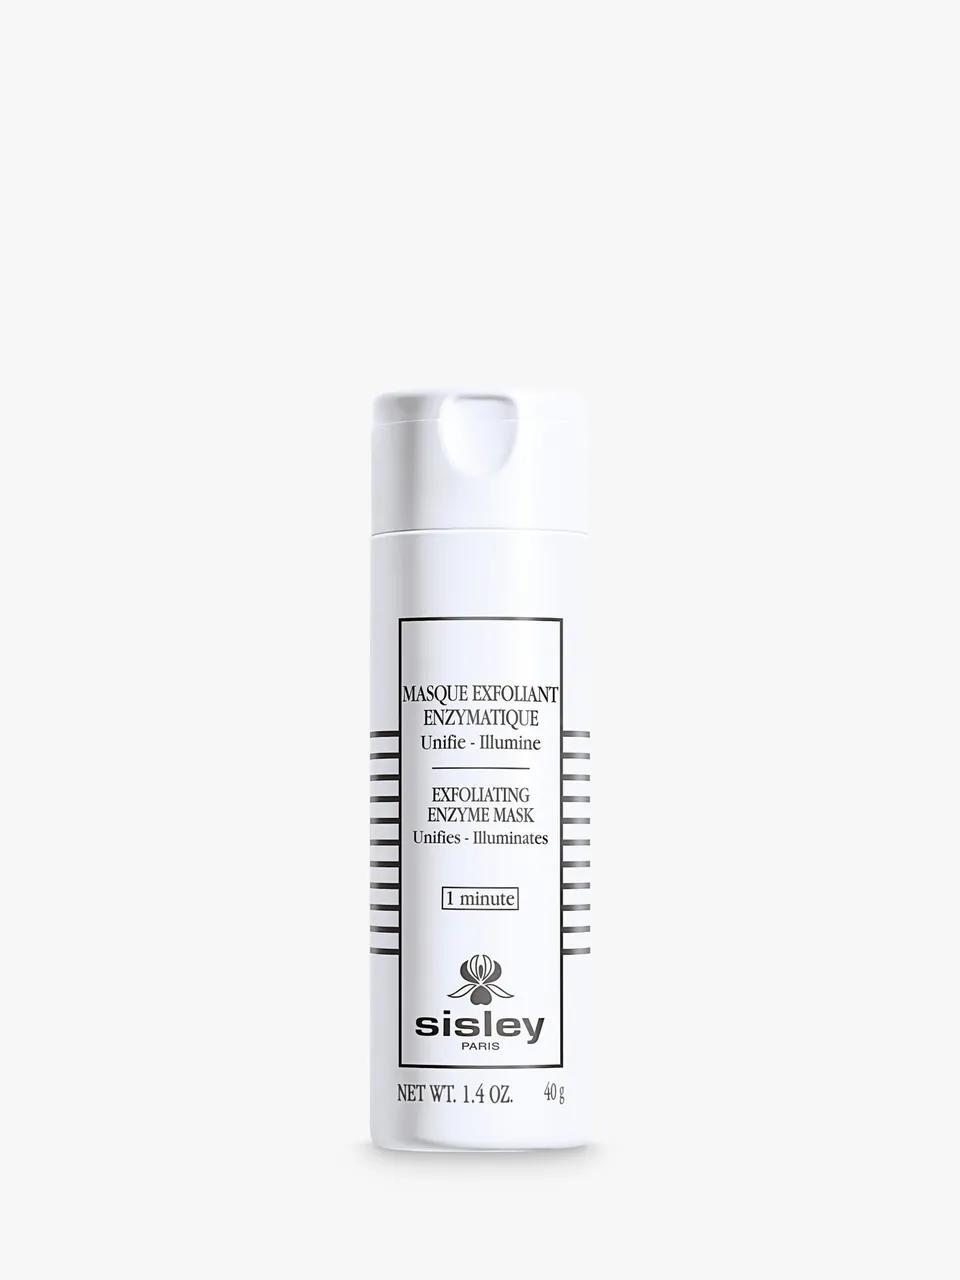 Sisley-Paris Exfoliating Enzyme Mask, 40g - Unisex